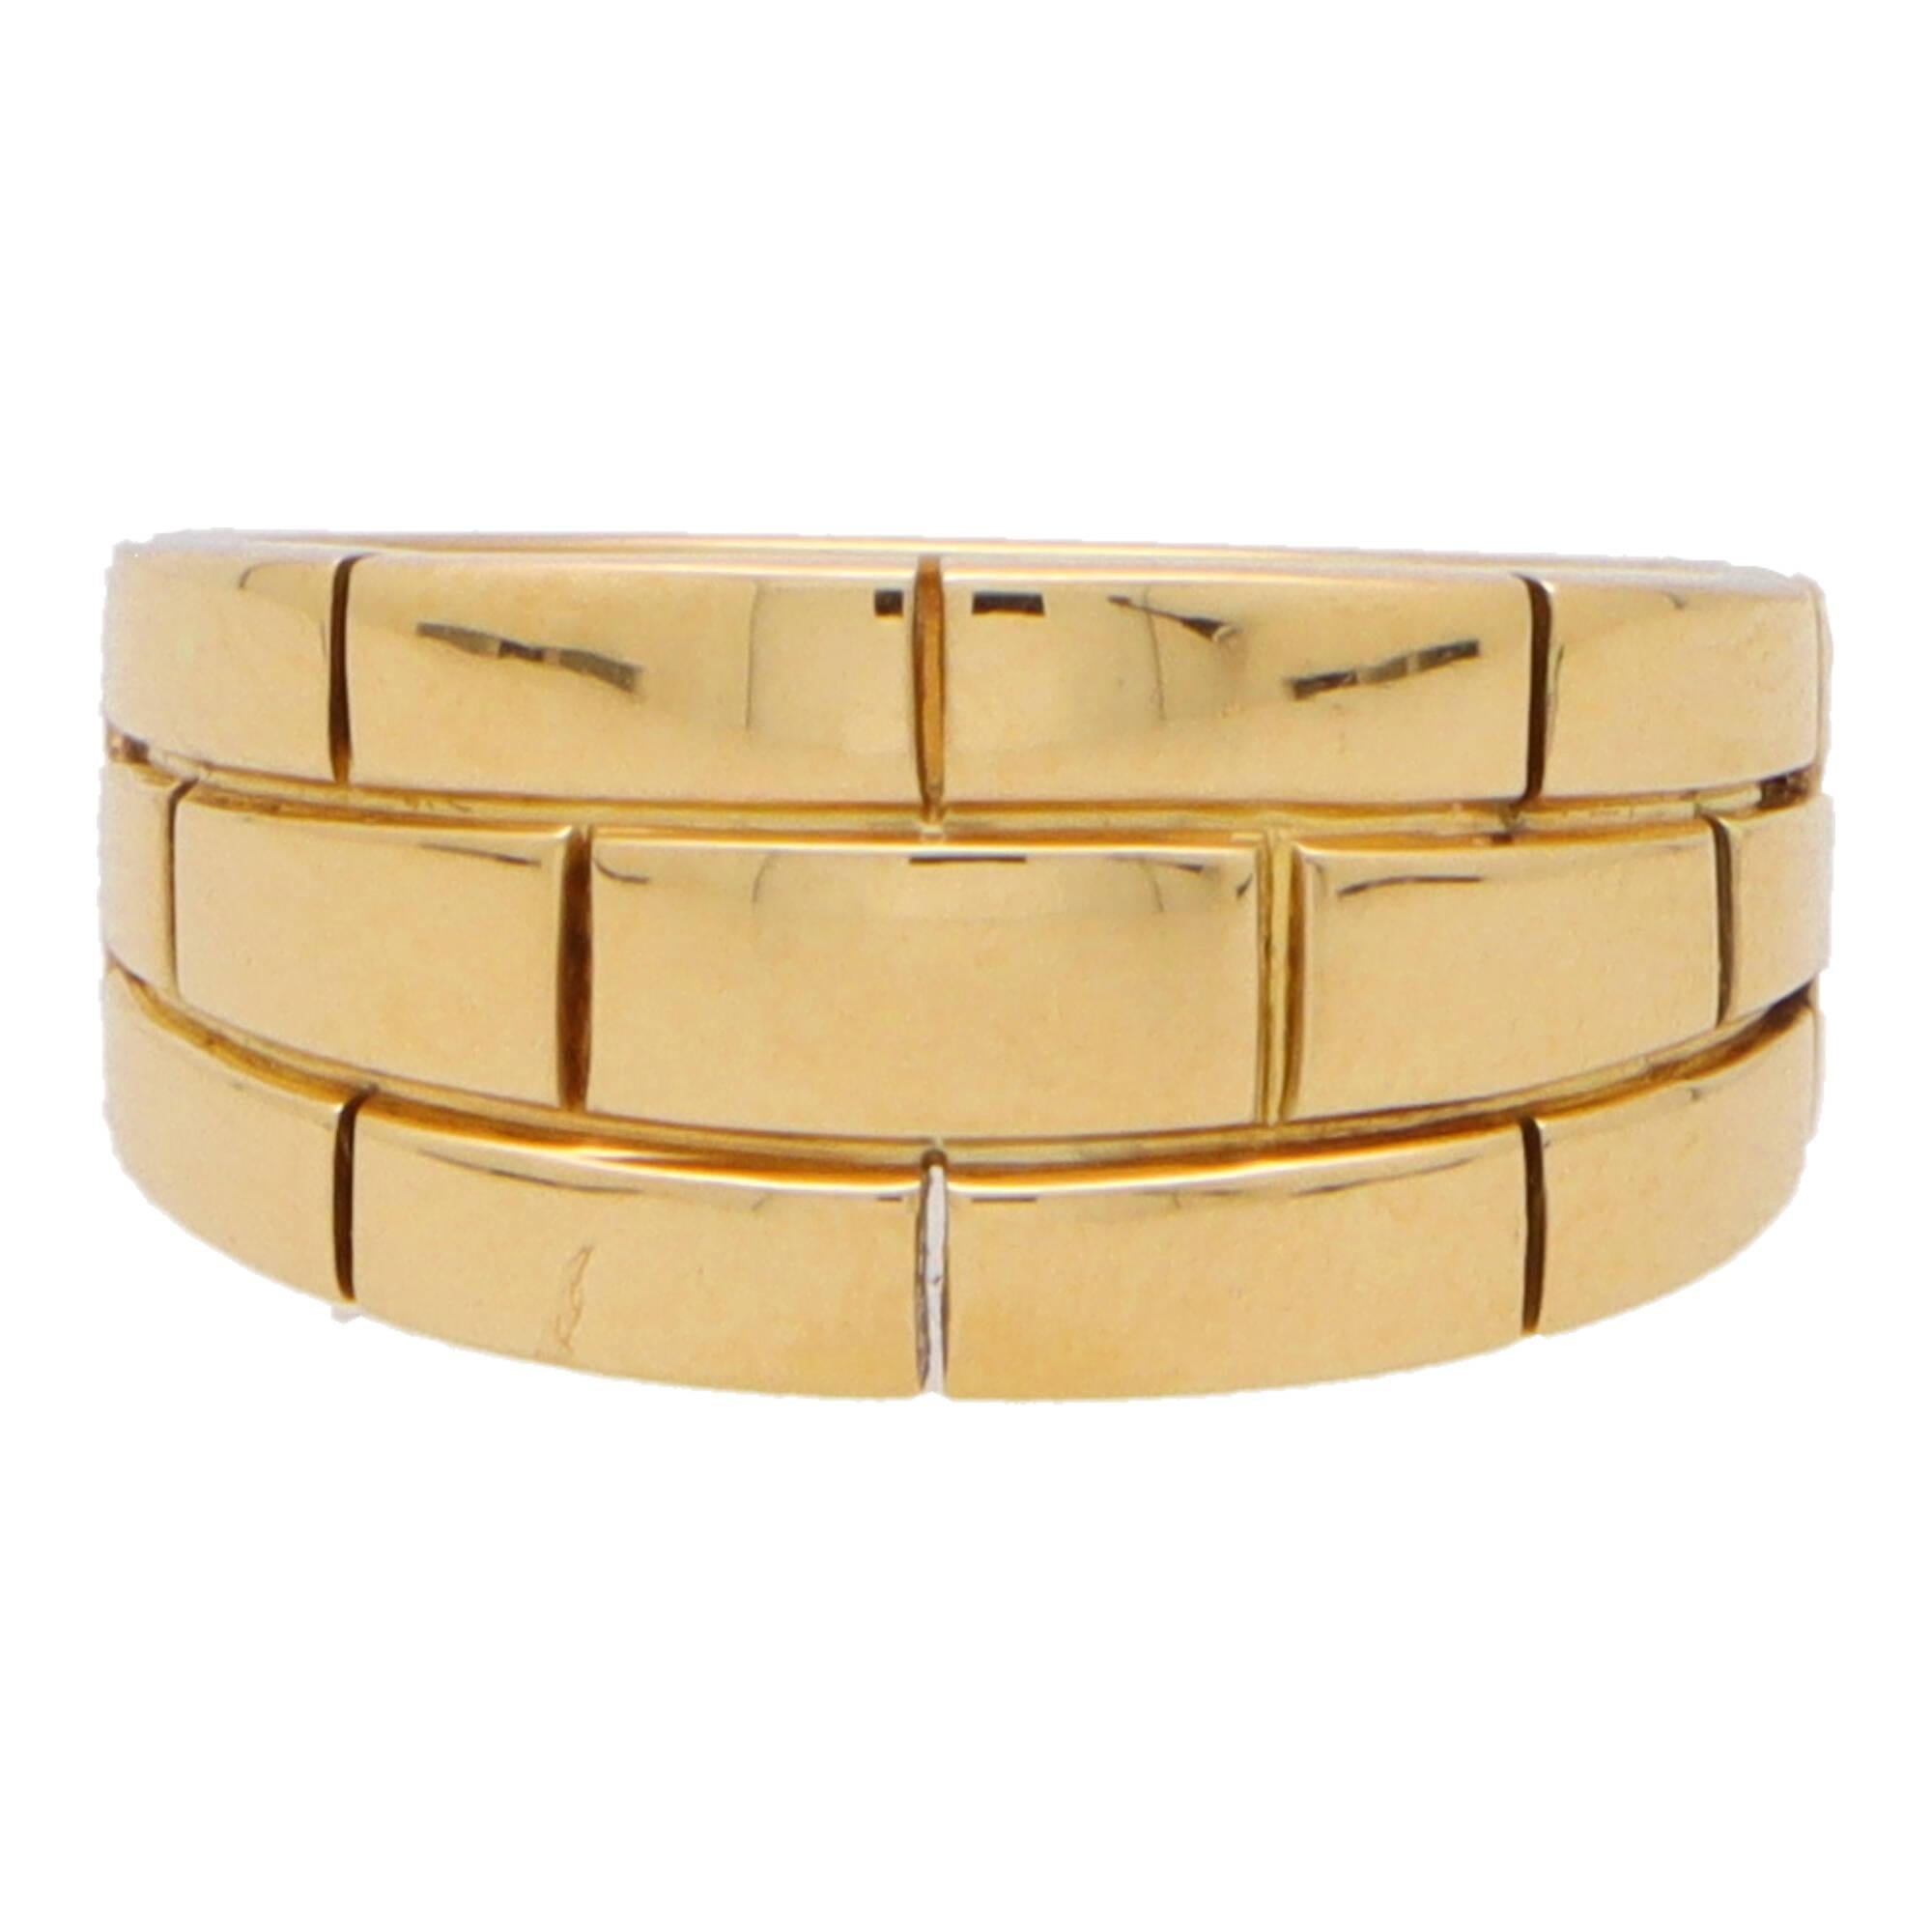 Magnifique bague vintage Cartier Maillon Panthère à motif de briques en or jaune 18 carats.

L'anneau est composé de trois rangées de panneaux à motifs de briques qui font la moitié du tour de l'anneau. La largeur de l'anneau est bien graduée et la